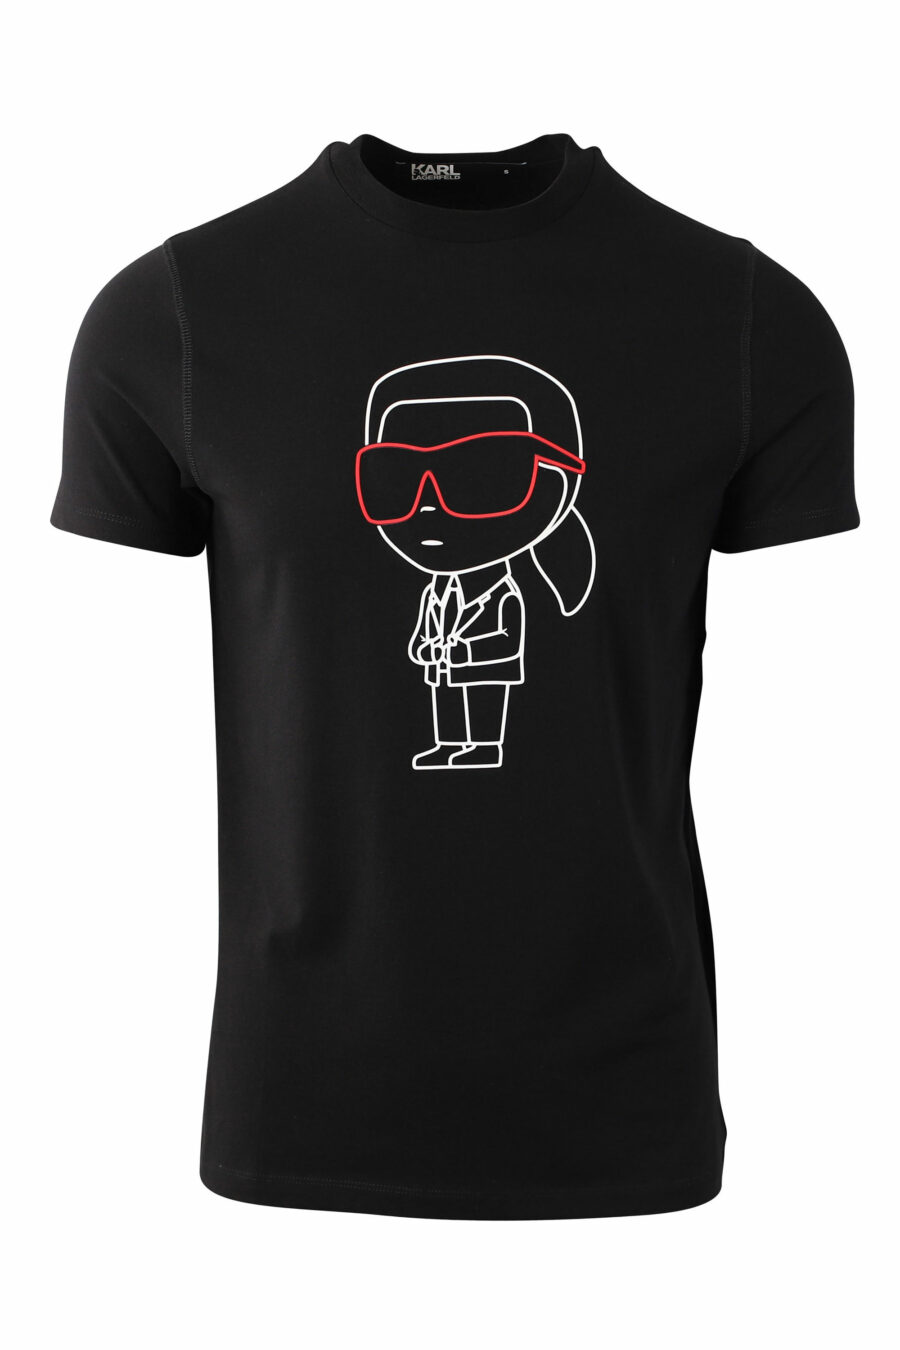 Camiseta negra con maxilogo "karl" silueta - IMG 0010 1